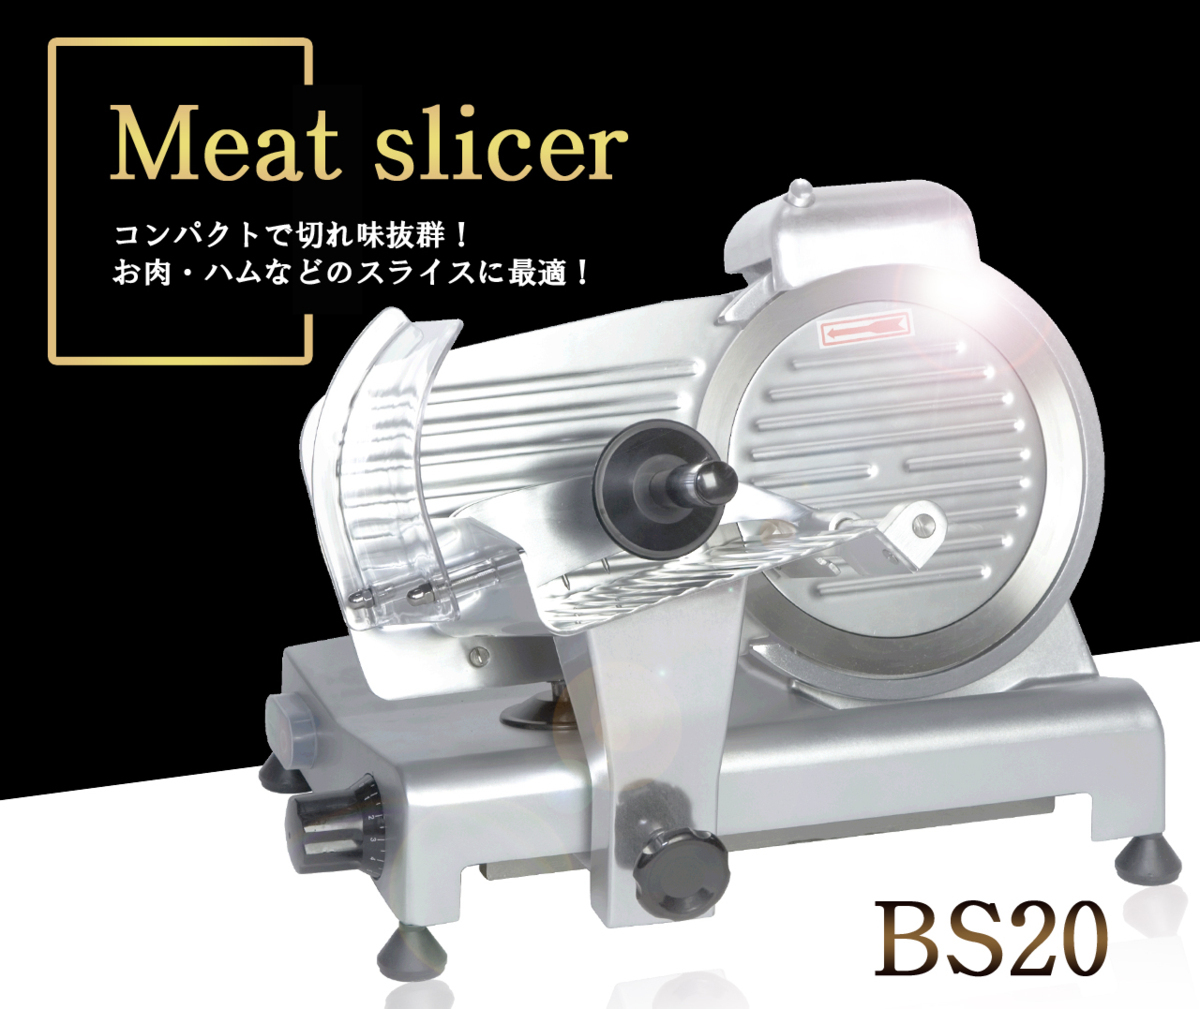 特別価格 ミートスライサー BS20 ハムスライサー 肉スライサー 【代引不可】 スライサー 調理器具 調理機器 業務用 厨房機器